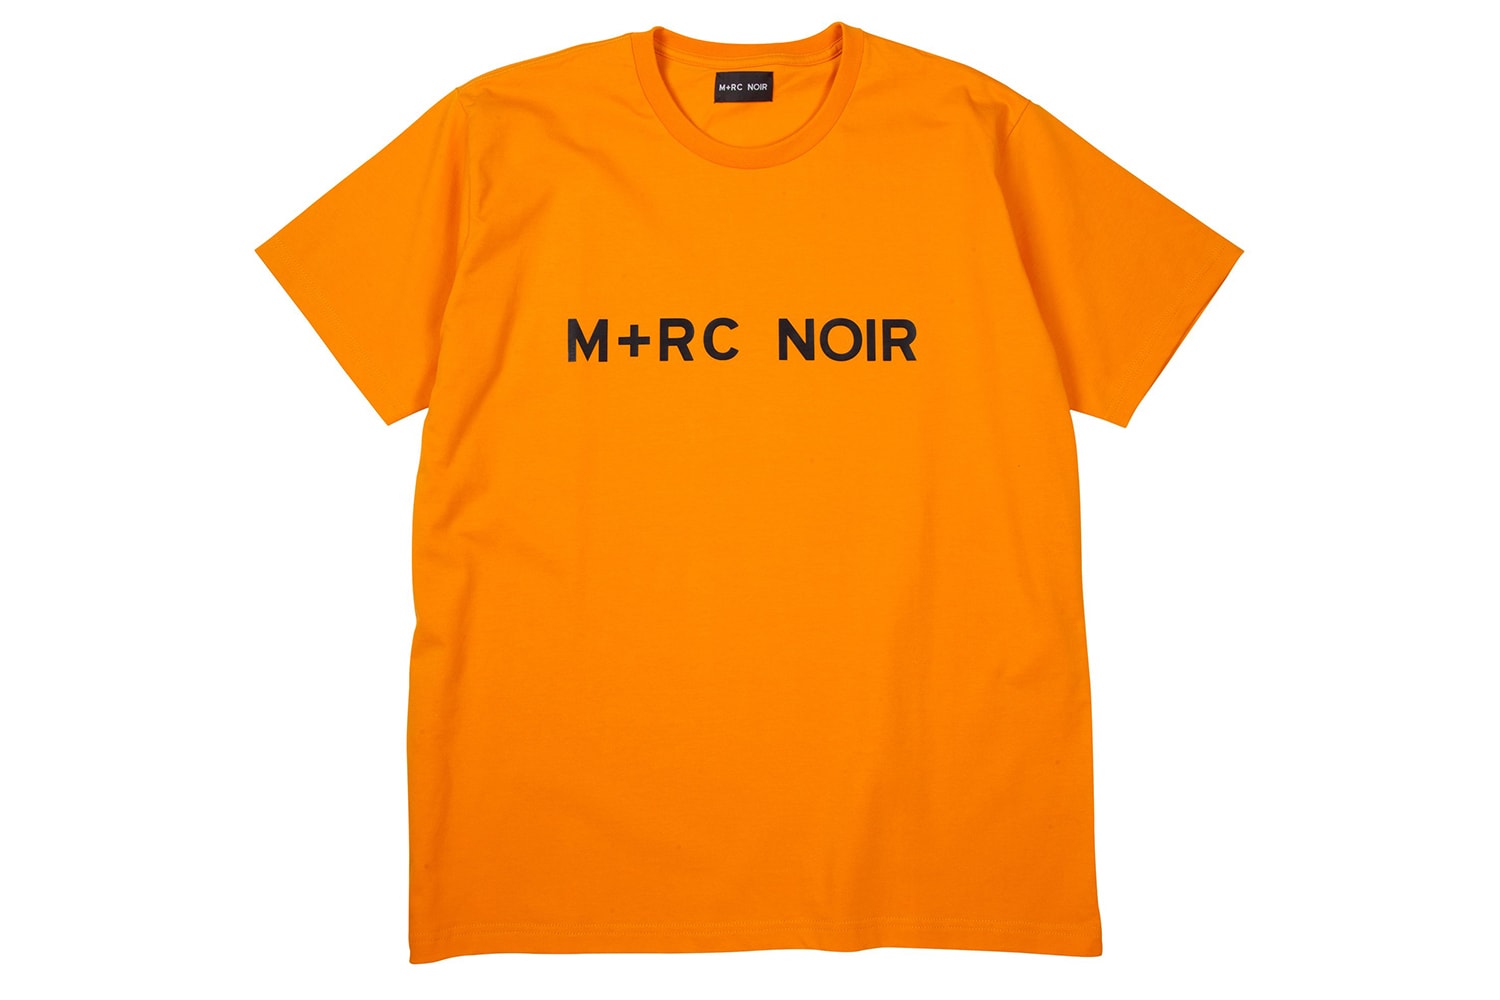 M+RC NOIR Seconde Parie Collection Automne/Hiver 2017 Streetwear